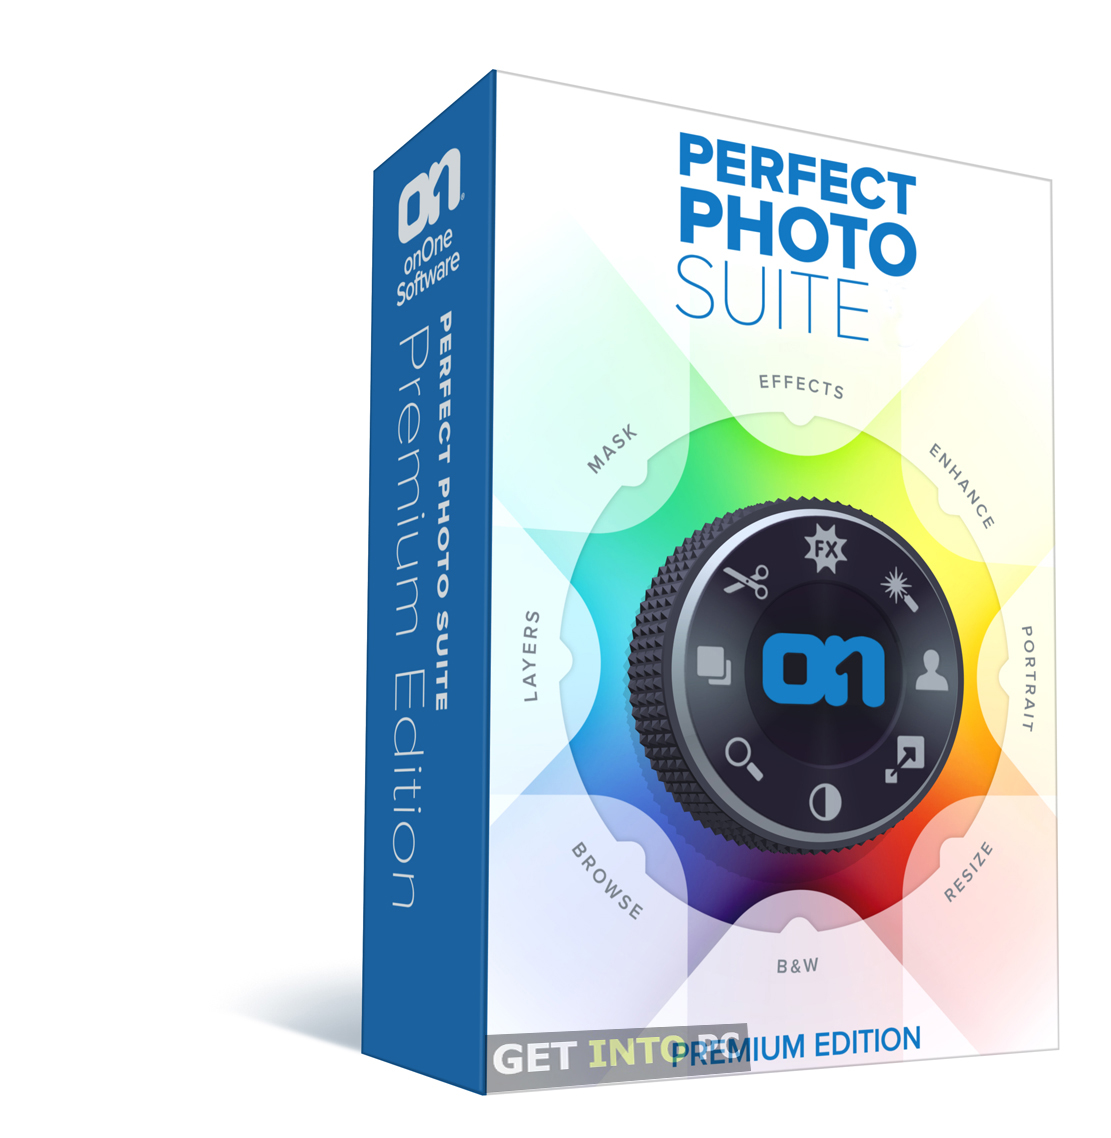 Perfect Photo Suite Premium Edition Free